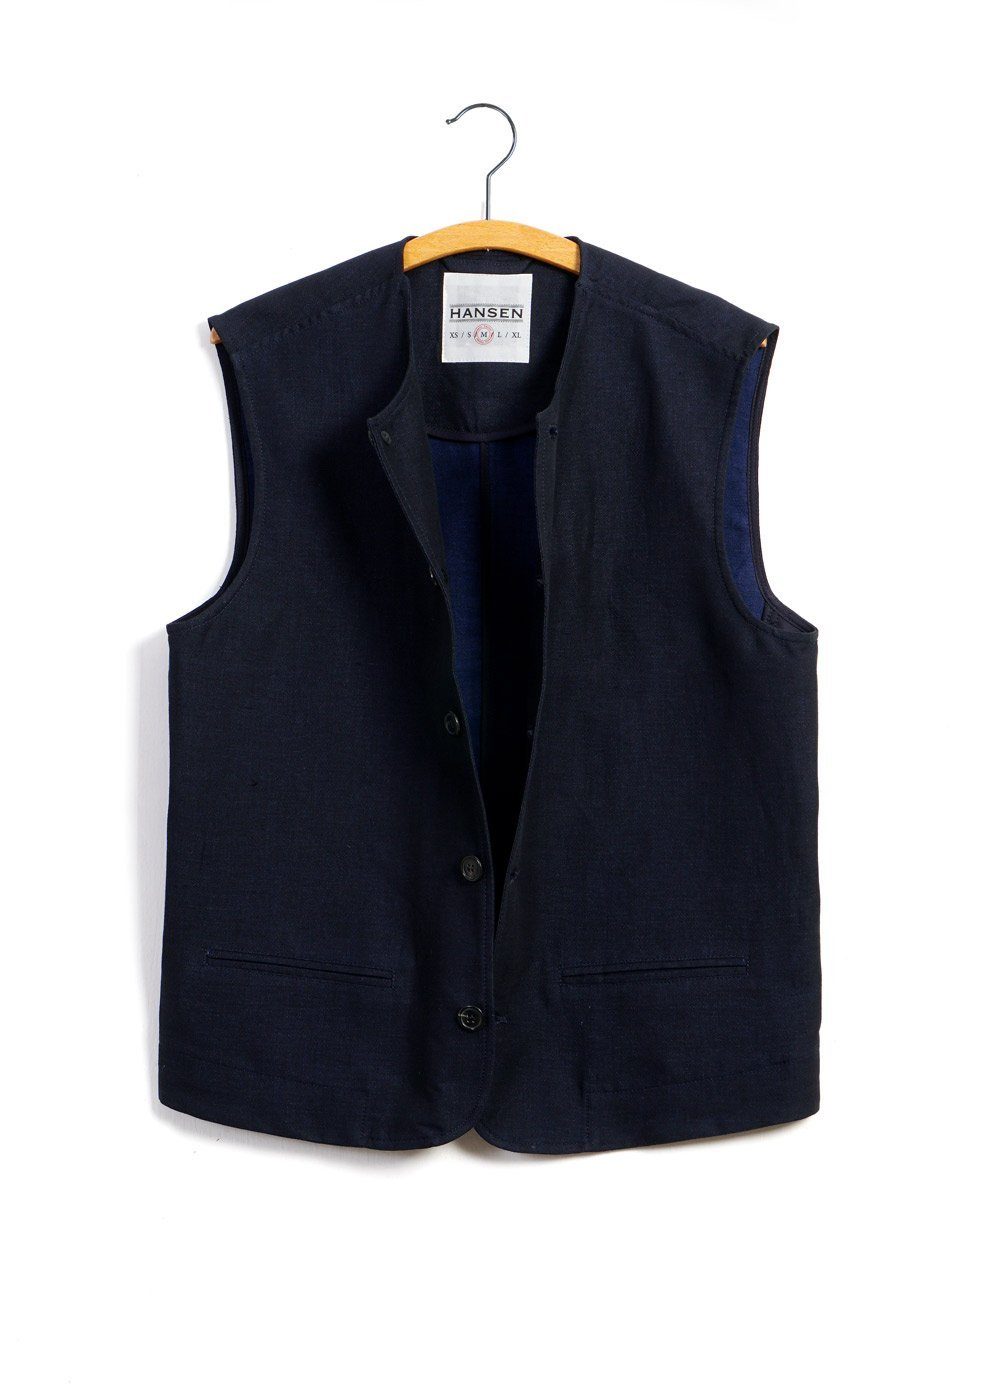 BEN | Crewneck Waistcoat | 3-Tone Blue -HANSEN Garments- HANSEN Garments